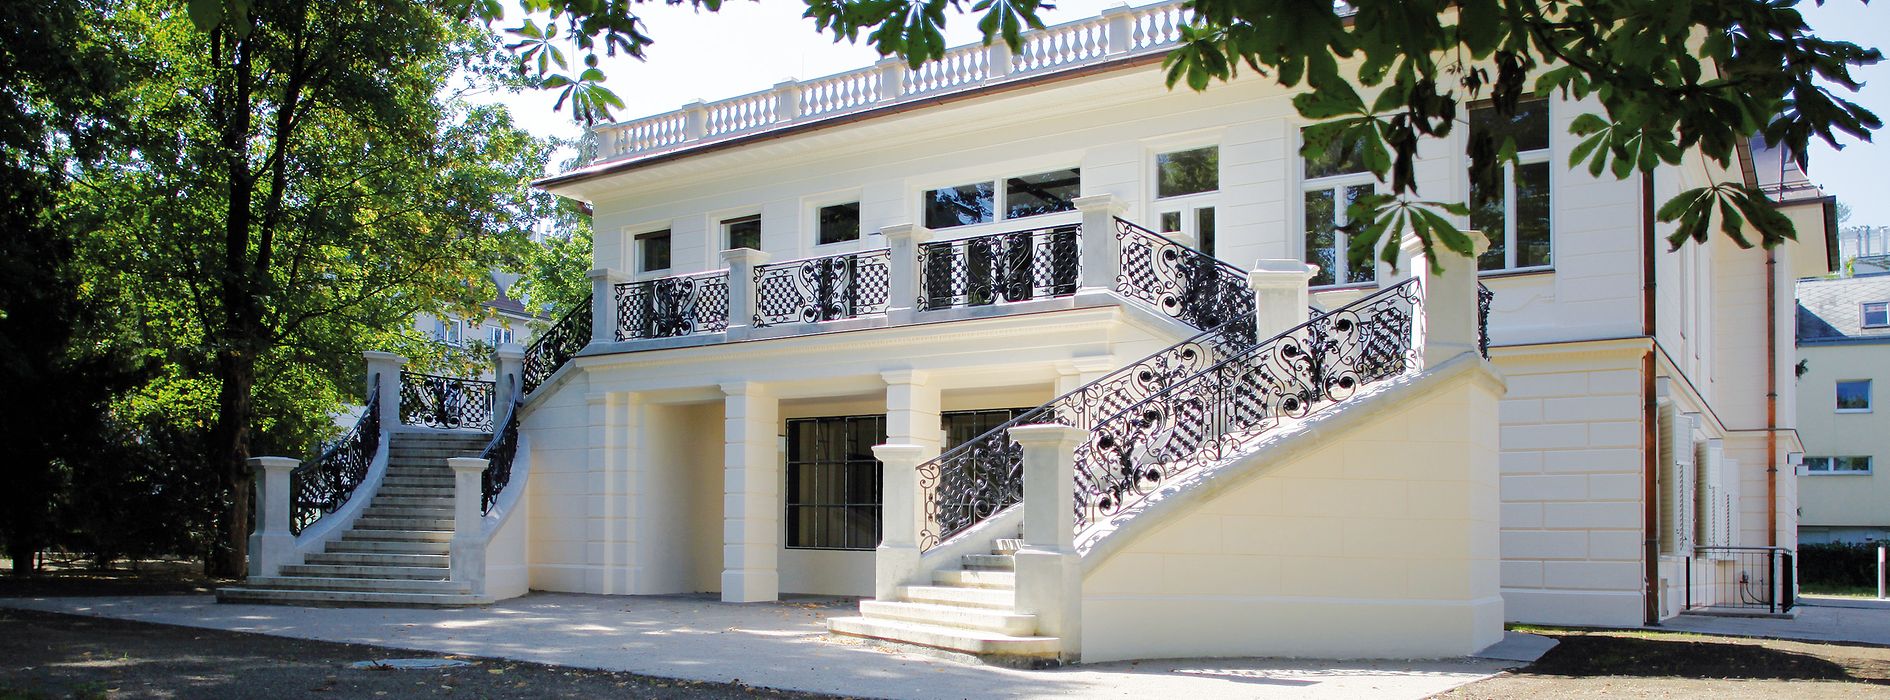 Klimt-Villa voon außen